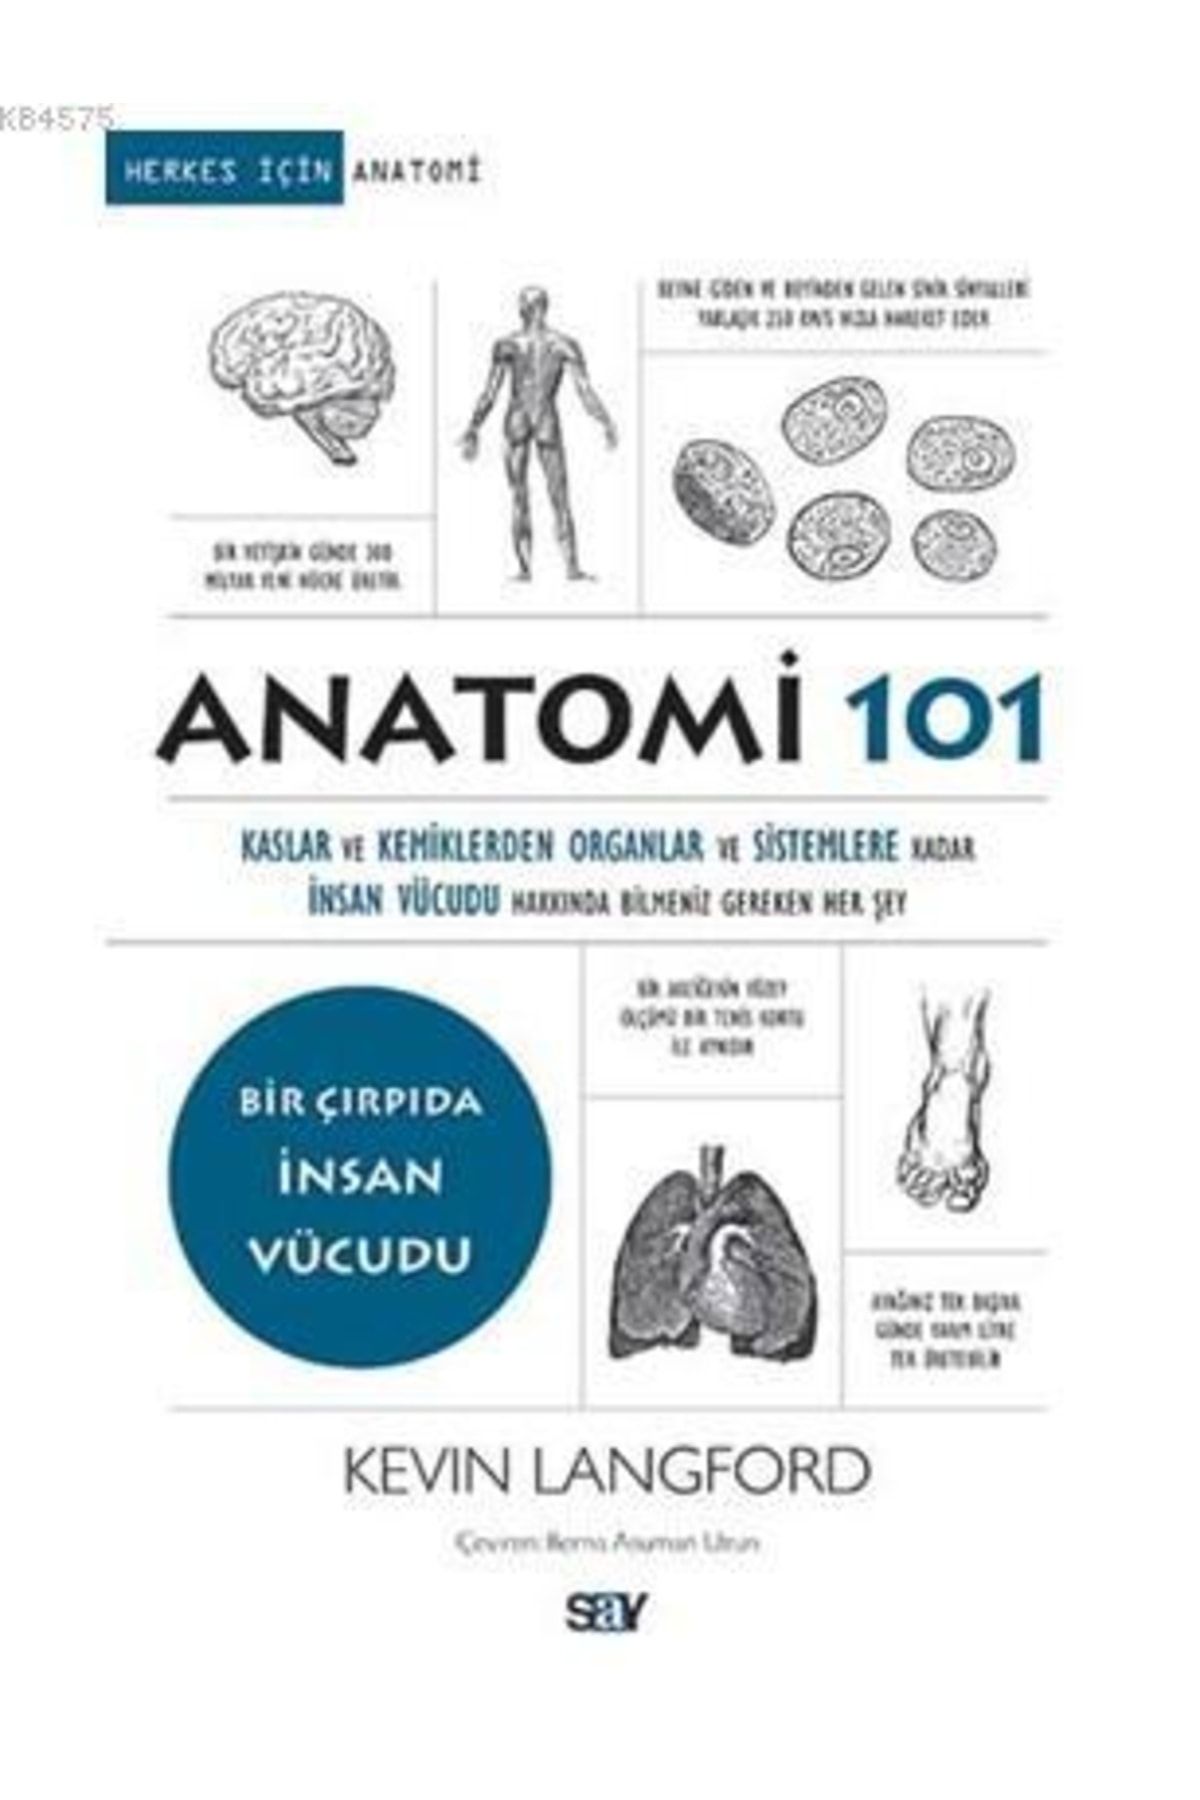 Say Yayınları Anatomi 101; Kaslar Ve Kemiklerden Organlar Ve Sistemlere Kadar Insan Vücudu Hakkında Bilmeniz Gerek